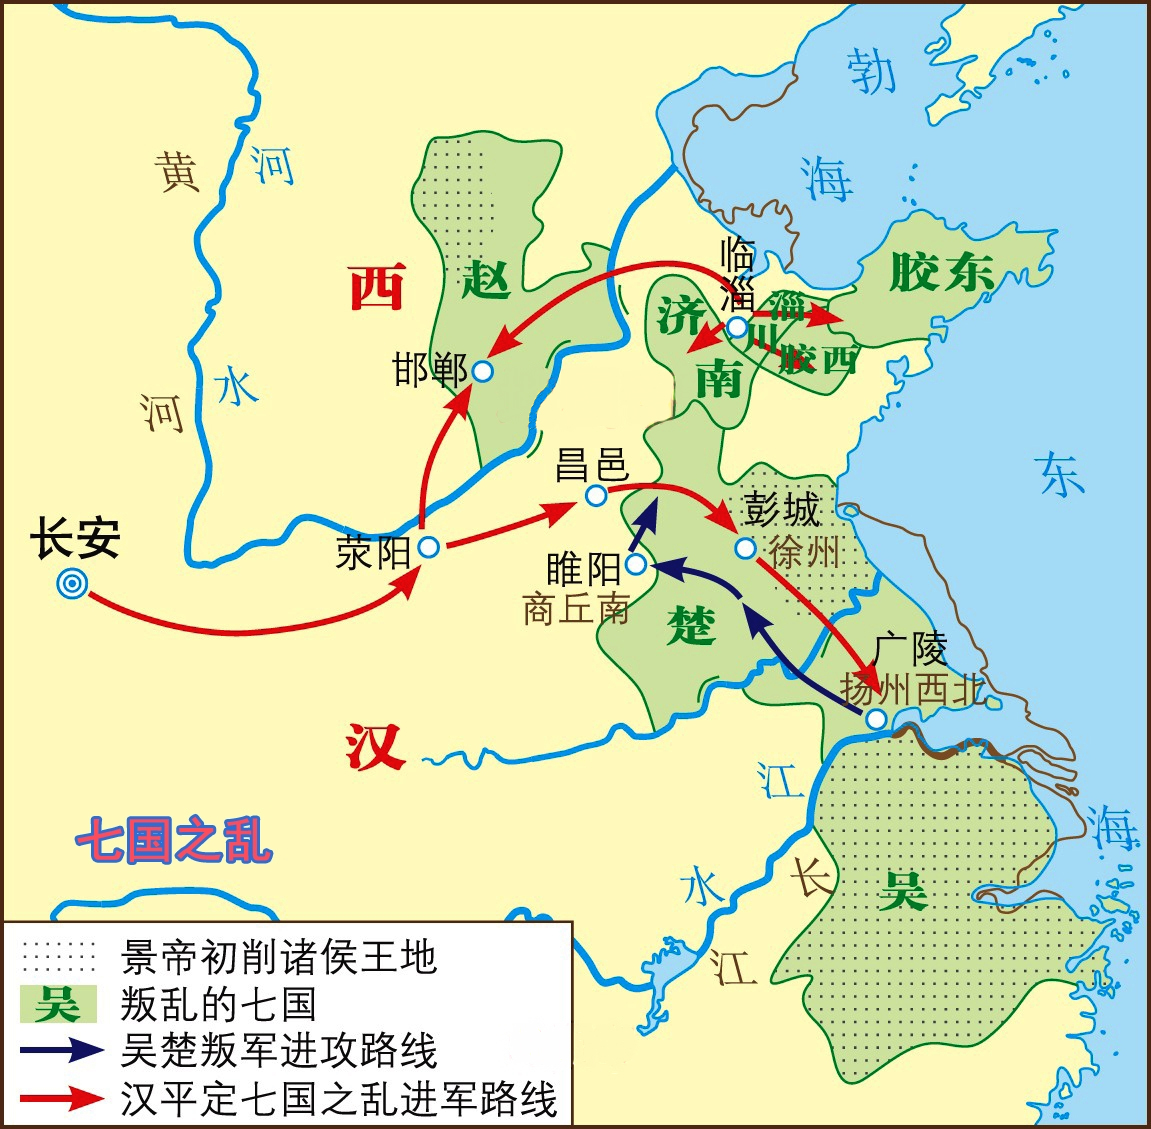 中国古代影响深远的十大叛乱:朱棣成为了藩王造反成功的唯一例子